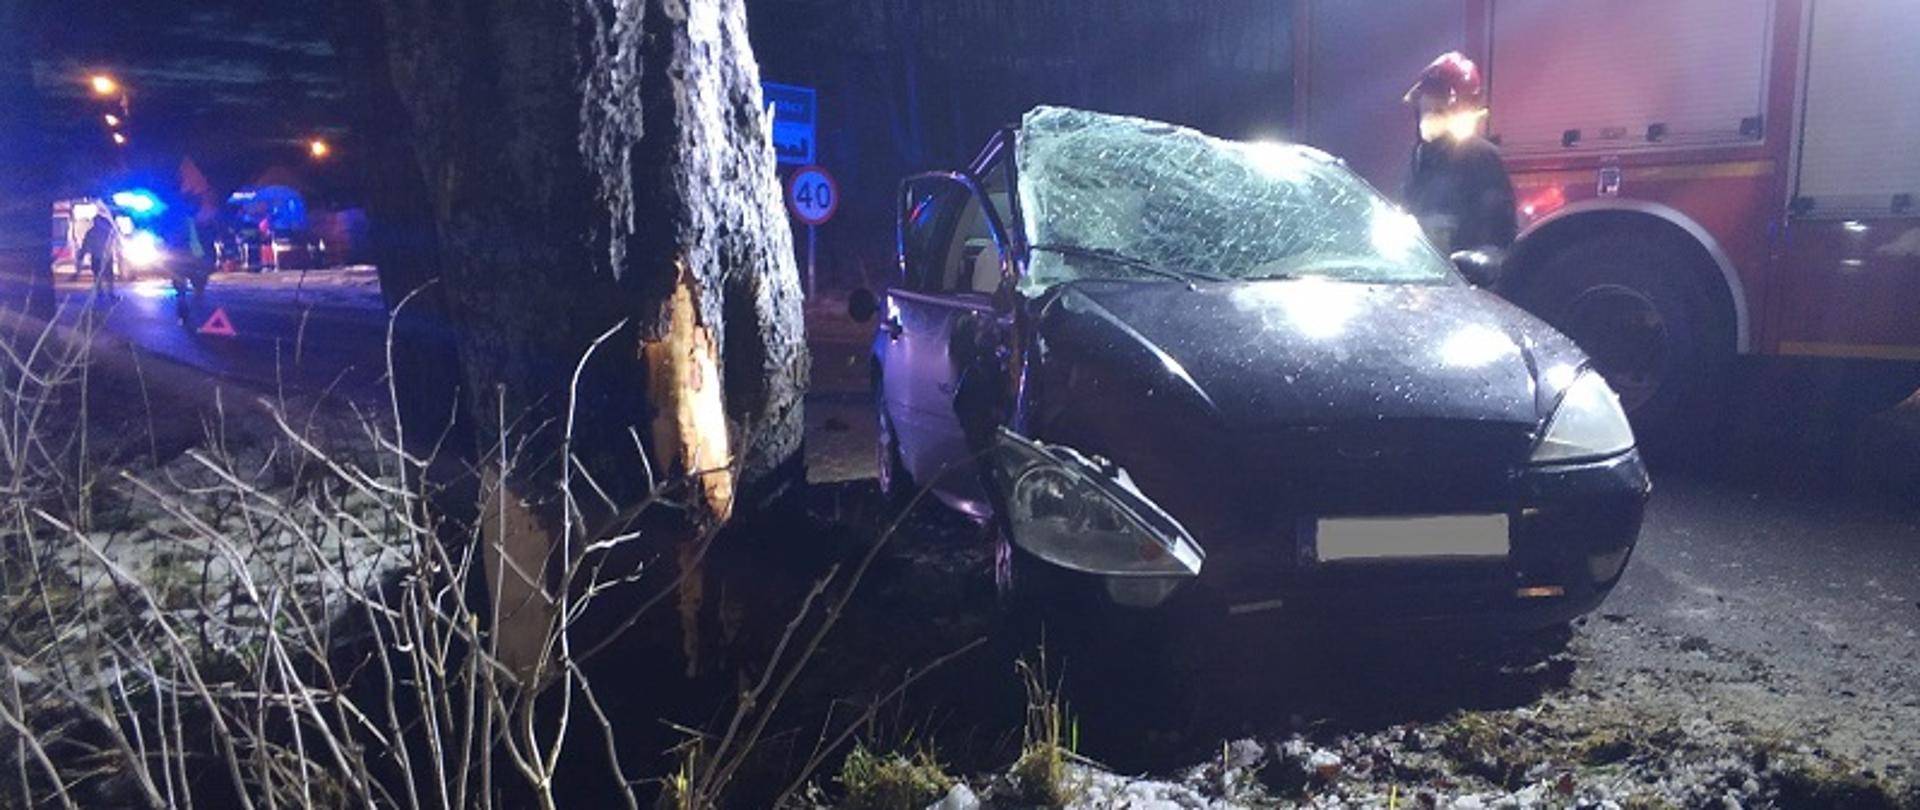 Zdjęcie wykonane nocą, na pierwszym planie widoczny przodem samochód osobowy Ford Focus koloru granatowego. Rozbita szyba przednia i zwisający nad kołem reflektorem. Z lewej strony pojazdu widoczny fragment drzewa z uszkodzoną korą po uderzeniu pojazdu.